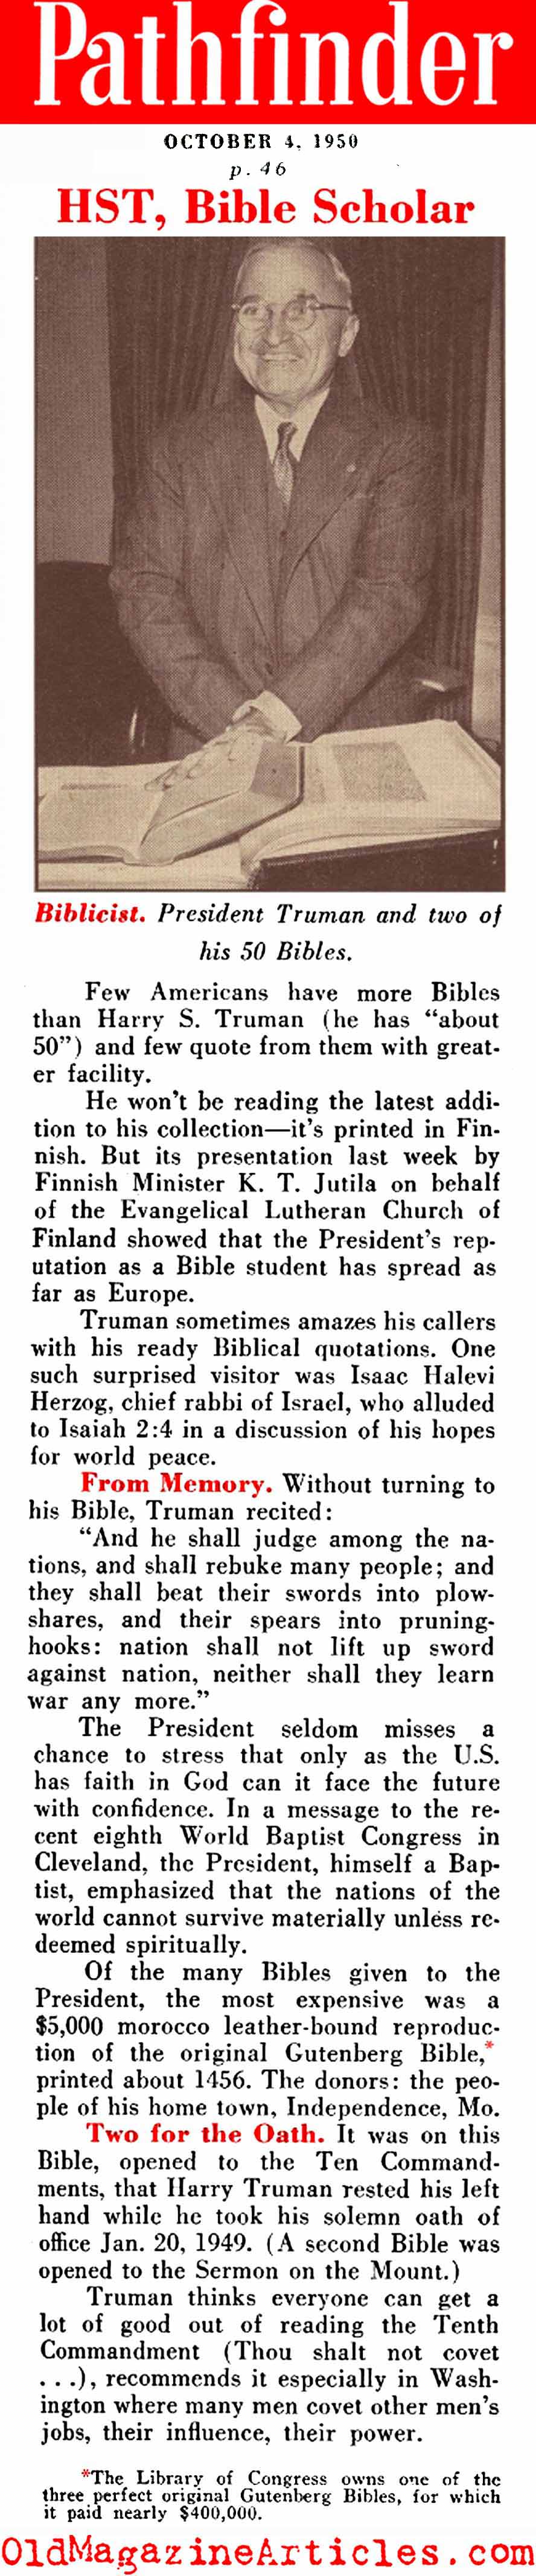 The Biblicist (Pathfinder Magazine, 1950)